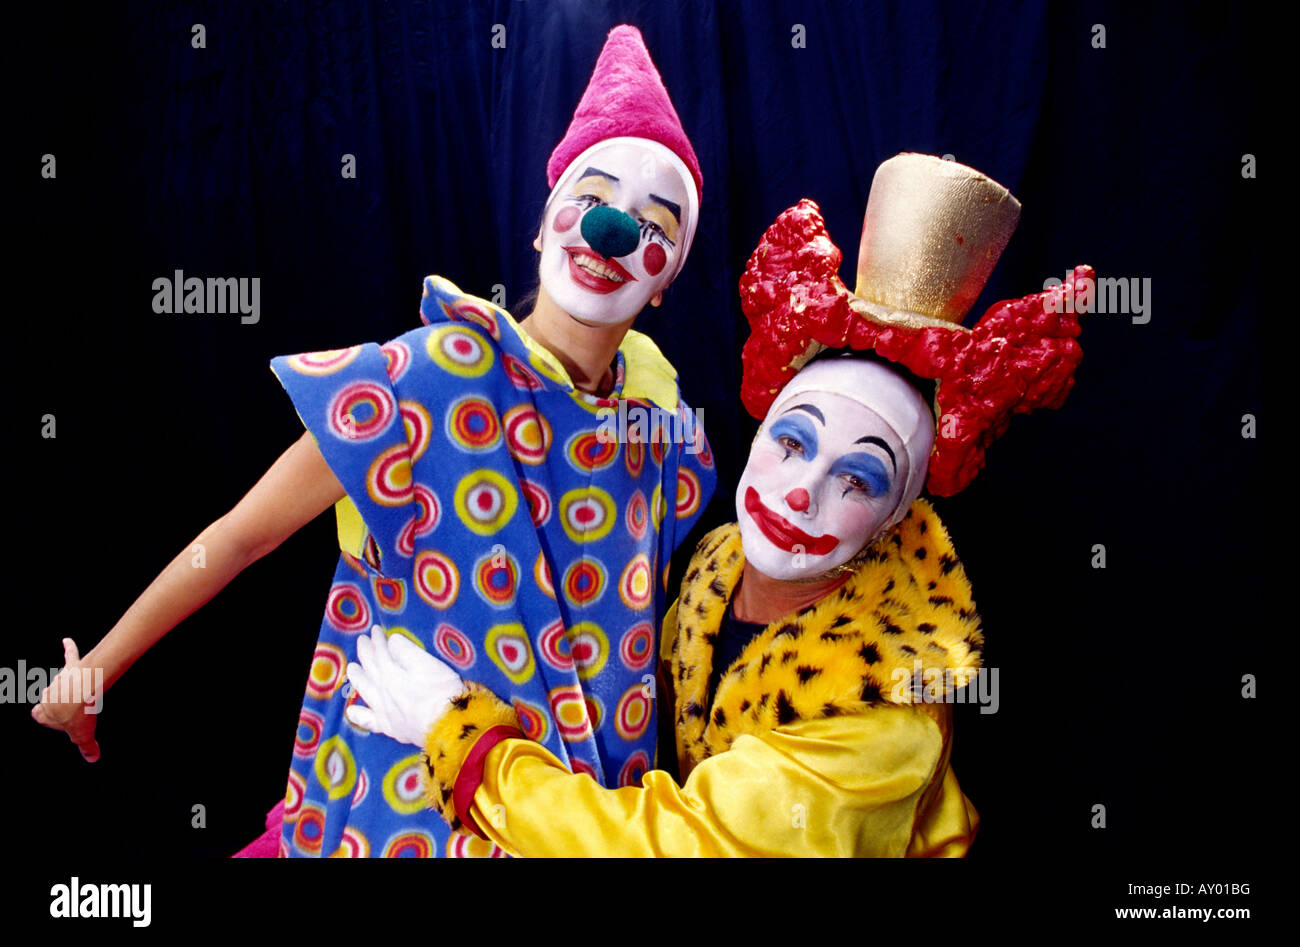 Deux clowns armés montrant leurs costumes Banque D'Images